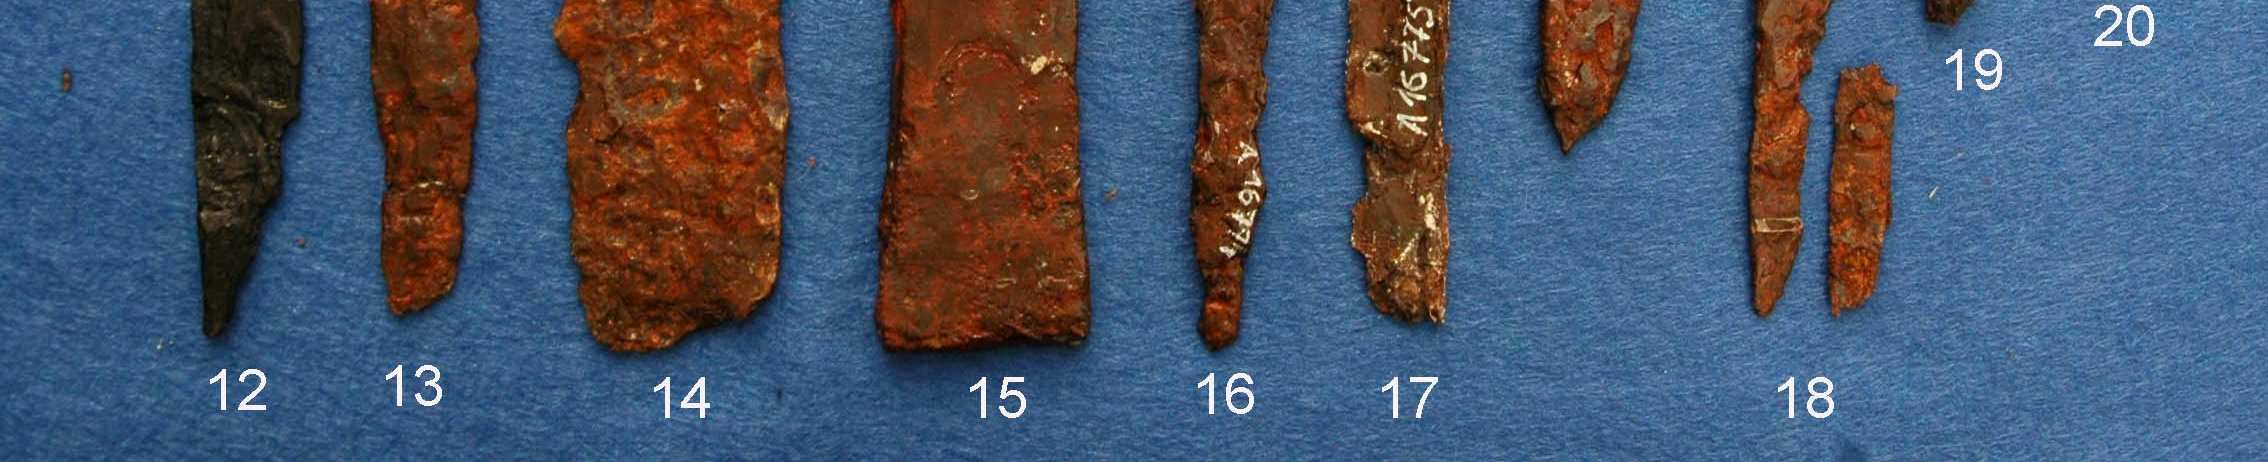 z hrobu H58/90, tvořený přehnutým pásem železného plechu, interpetovatelný jako kovové pouzdro se zasunutou čepelí uvnitř. Byl nalezen v oblasti pravého kolene.